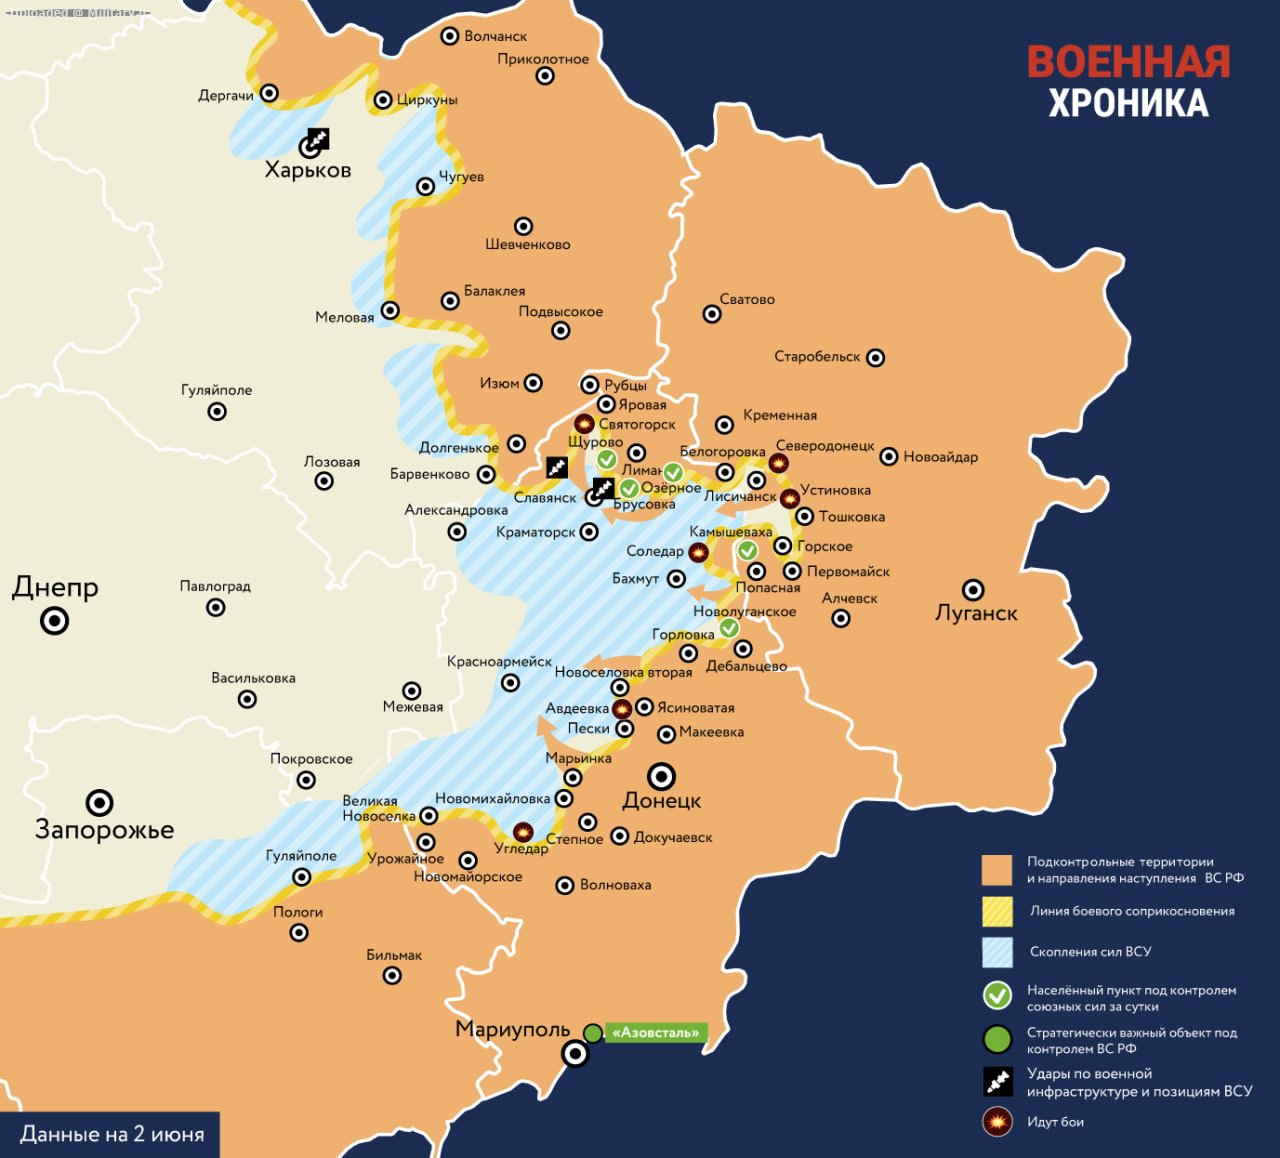 Donbass_map.jpg